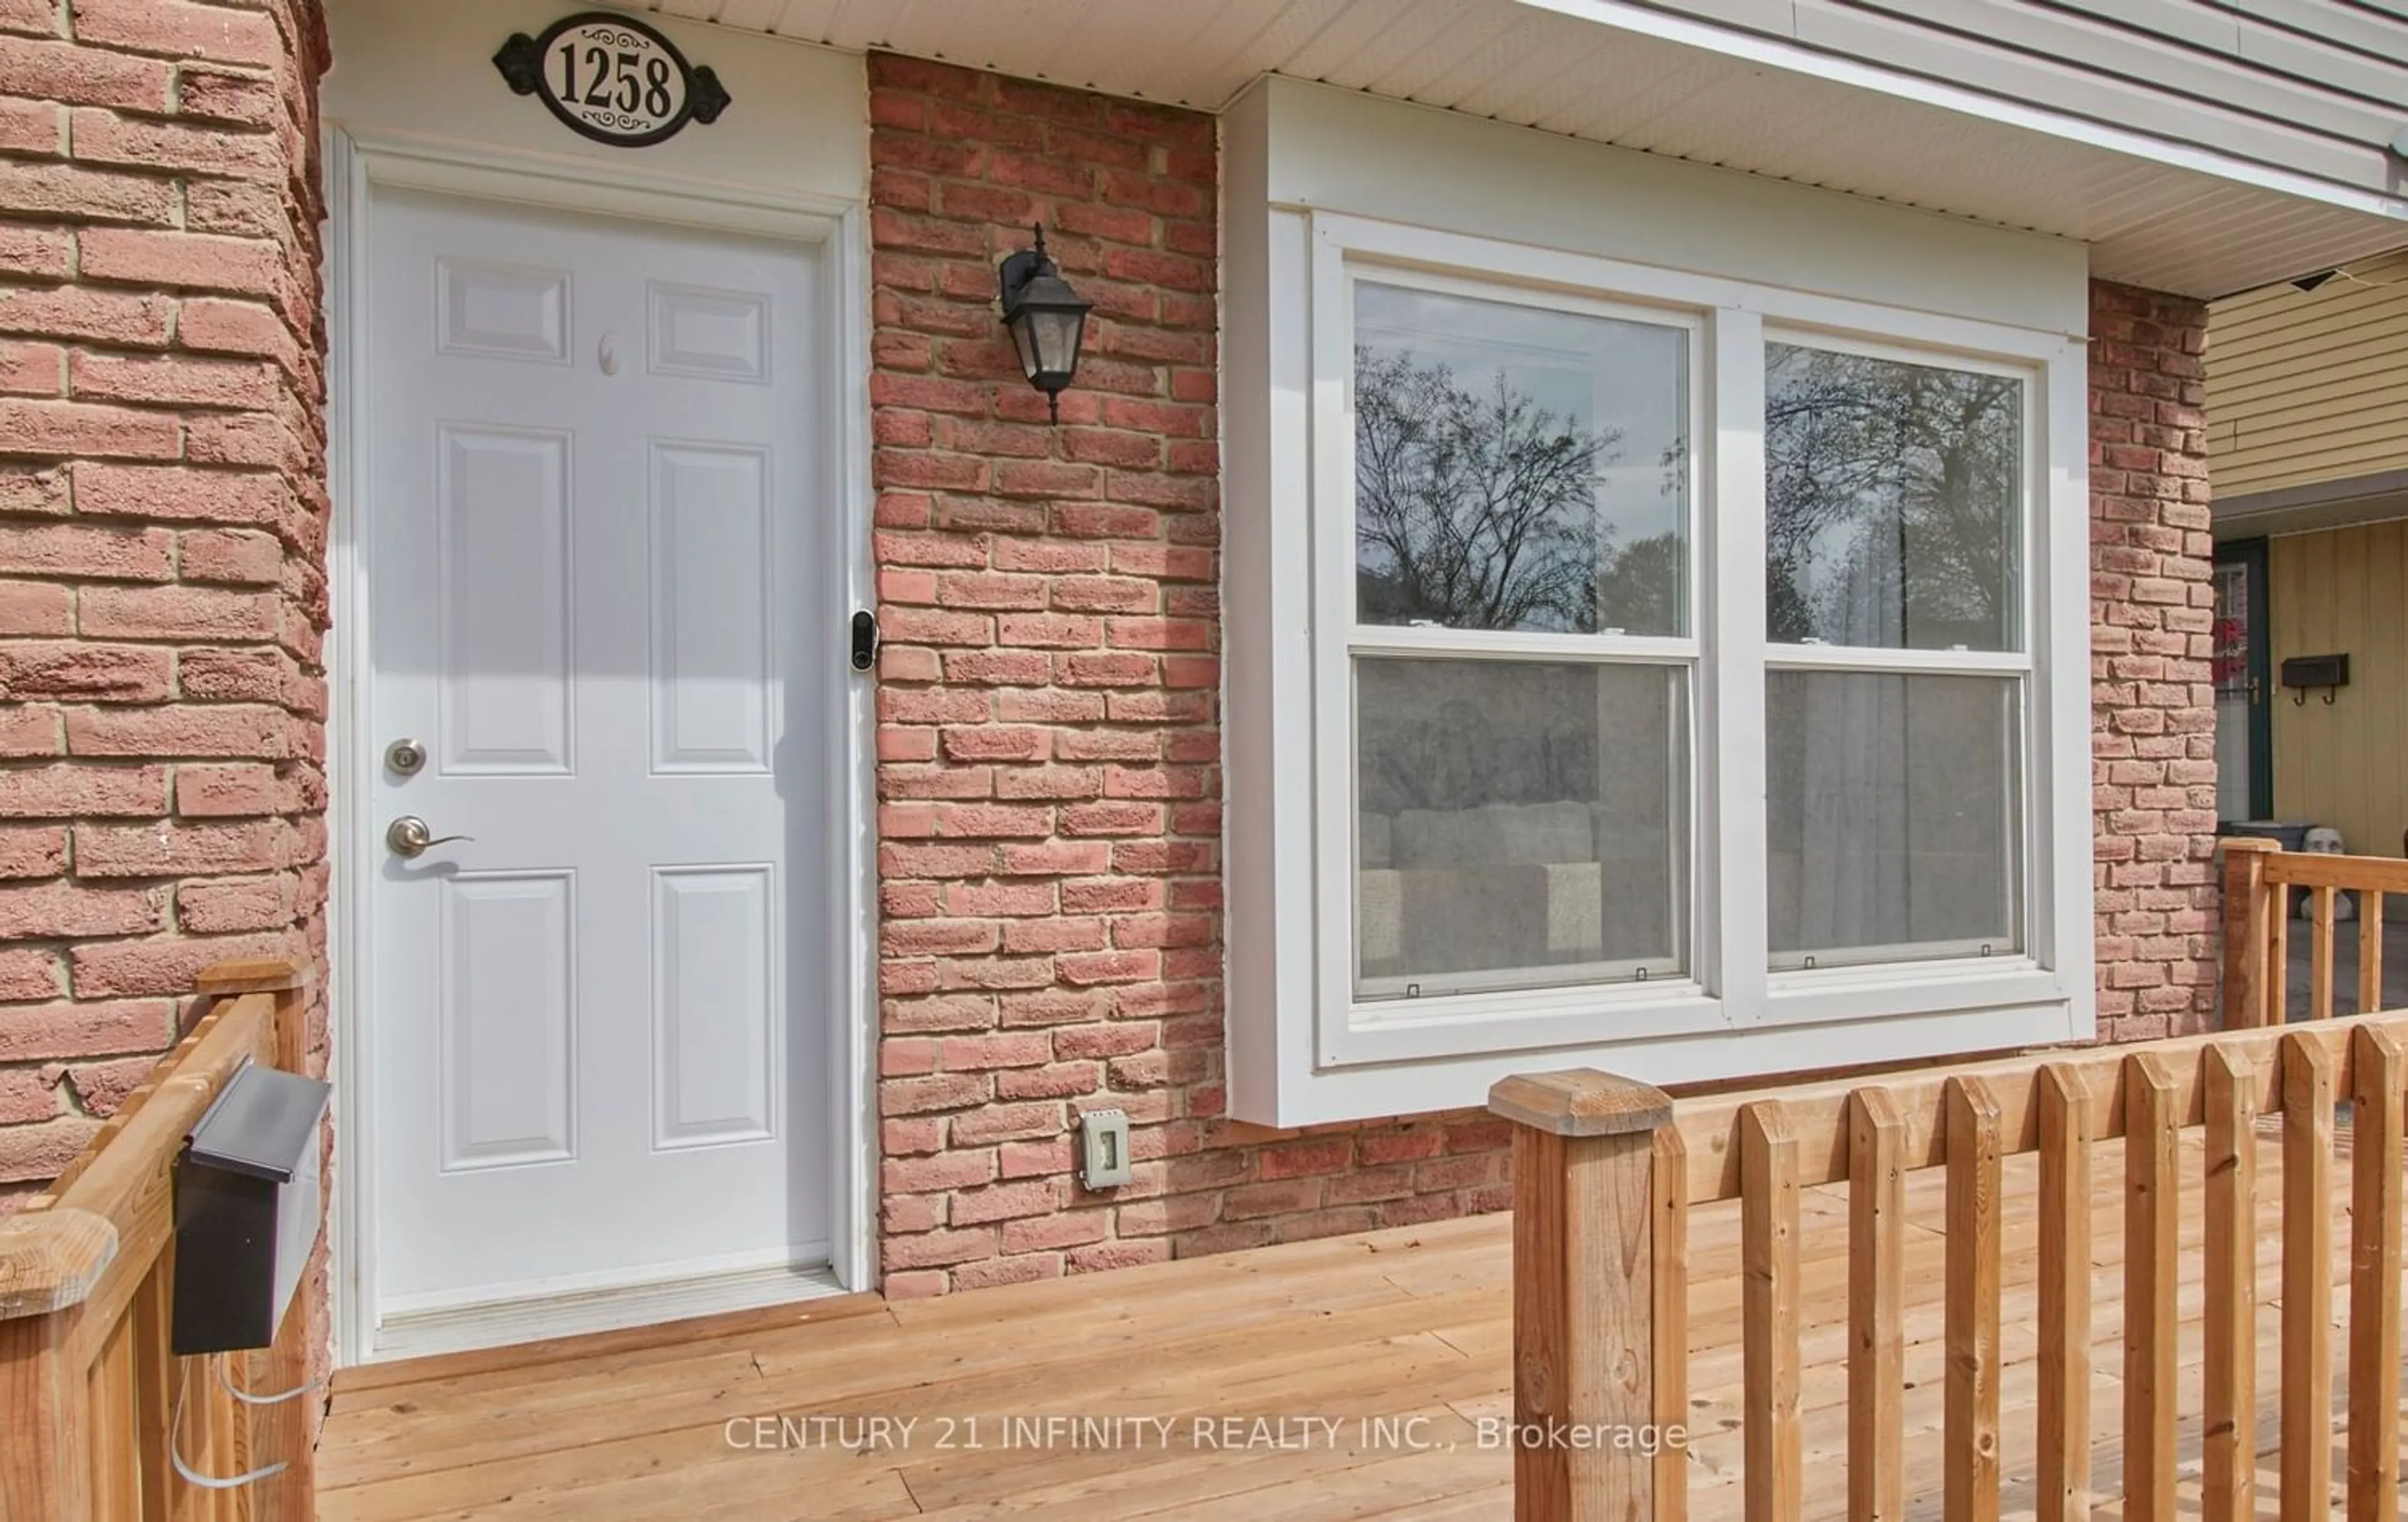 Home with brick exterior material for 1258 Eldorado Ave, Oshawa Ontario L1K 1G3